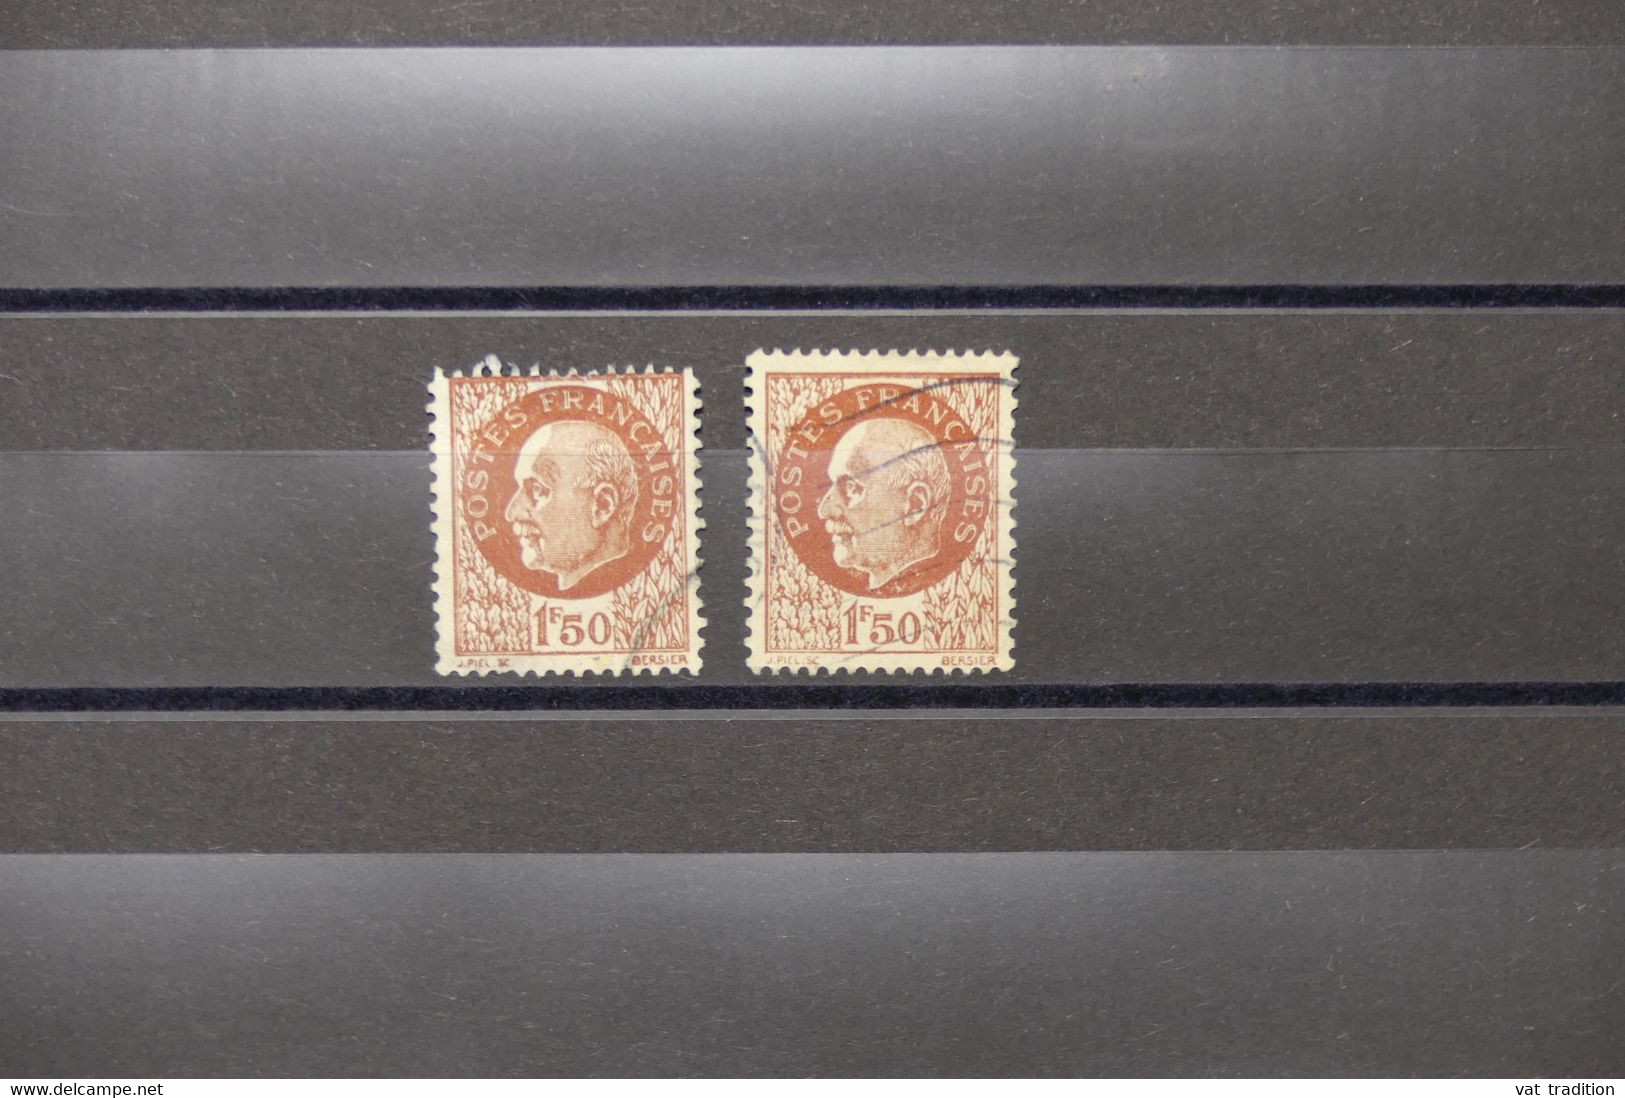 FRANCE - Variété - N° Yvert 517 - Type Pétain - 1 Plus Petit + 1 Normal - Oblitérés - L 74074 - Used Stamps